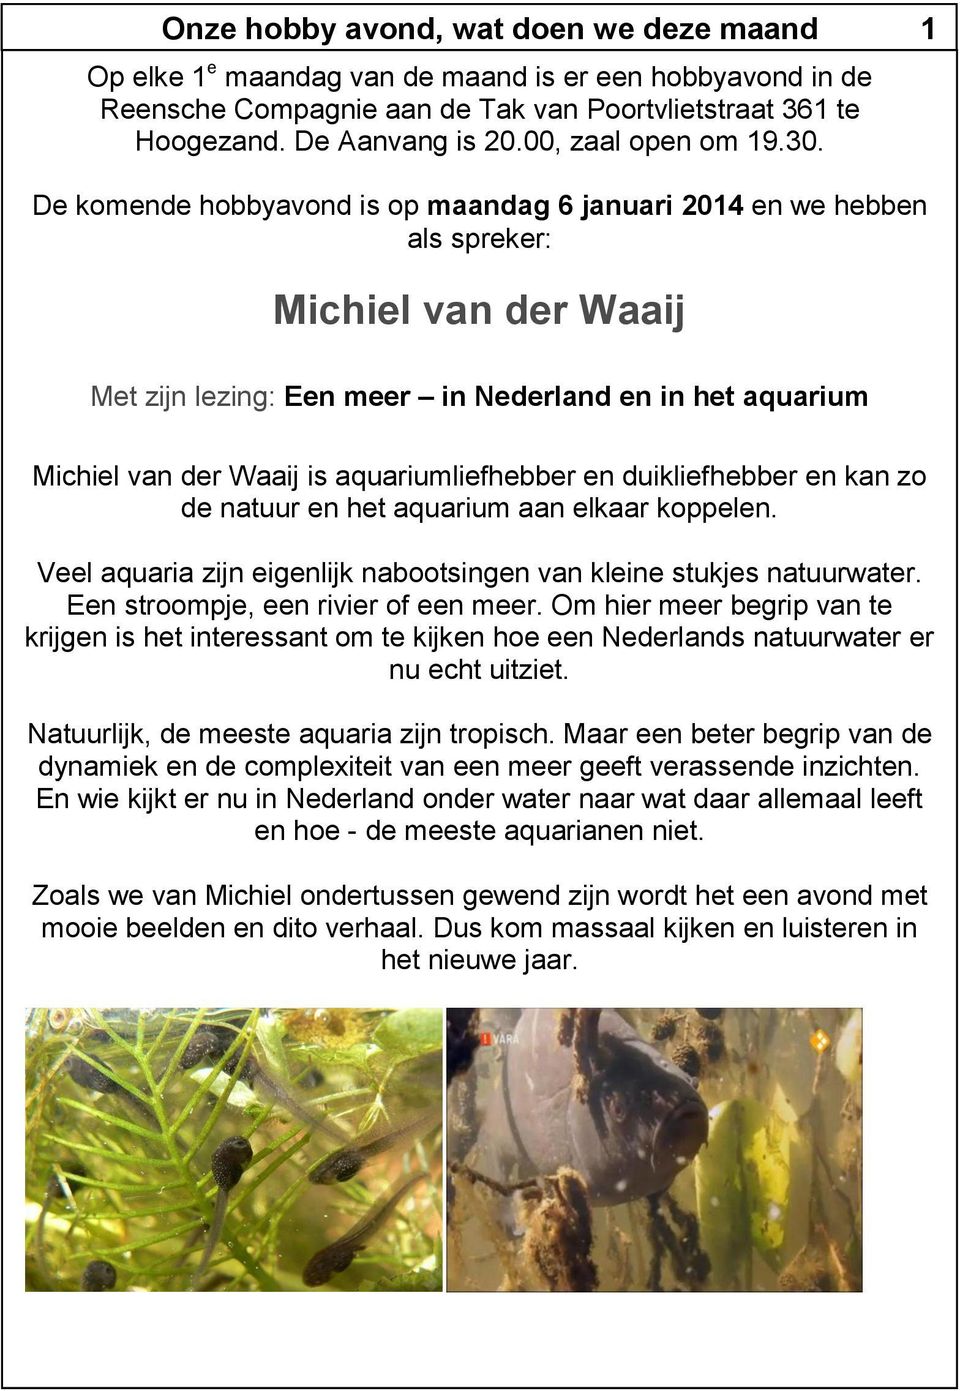 De komende hobbyavond is op maandag 6 januari 2014 en we hebben als spreker: Michiel van der Waaij Met zijn lezing: Een meer in Nederland en in het aquarium Michiel van der Waaij is